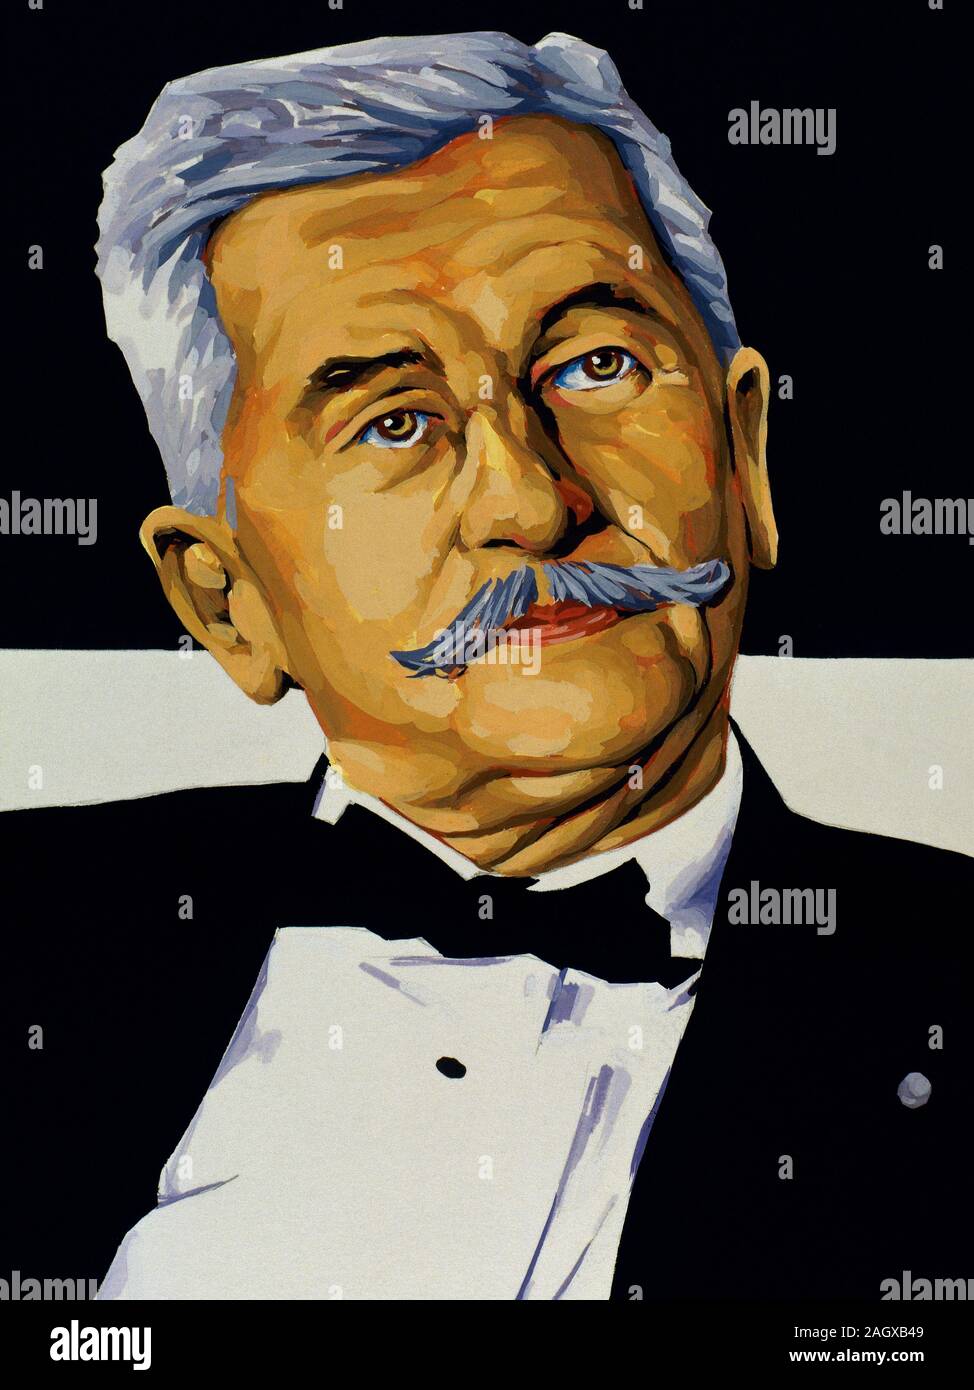 William Faulkner (1897-1962). Der amerikanische Schriftsteller, Nobelpreis für Literatur (1949). Porträt. Zeichnung und Aquarell von der Spanischen illustrator Francisco Fonollosa (d. Ende 20. Jahrhundert). Stockfoto